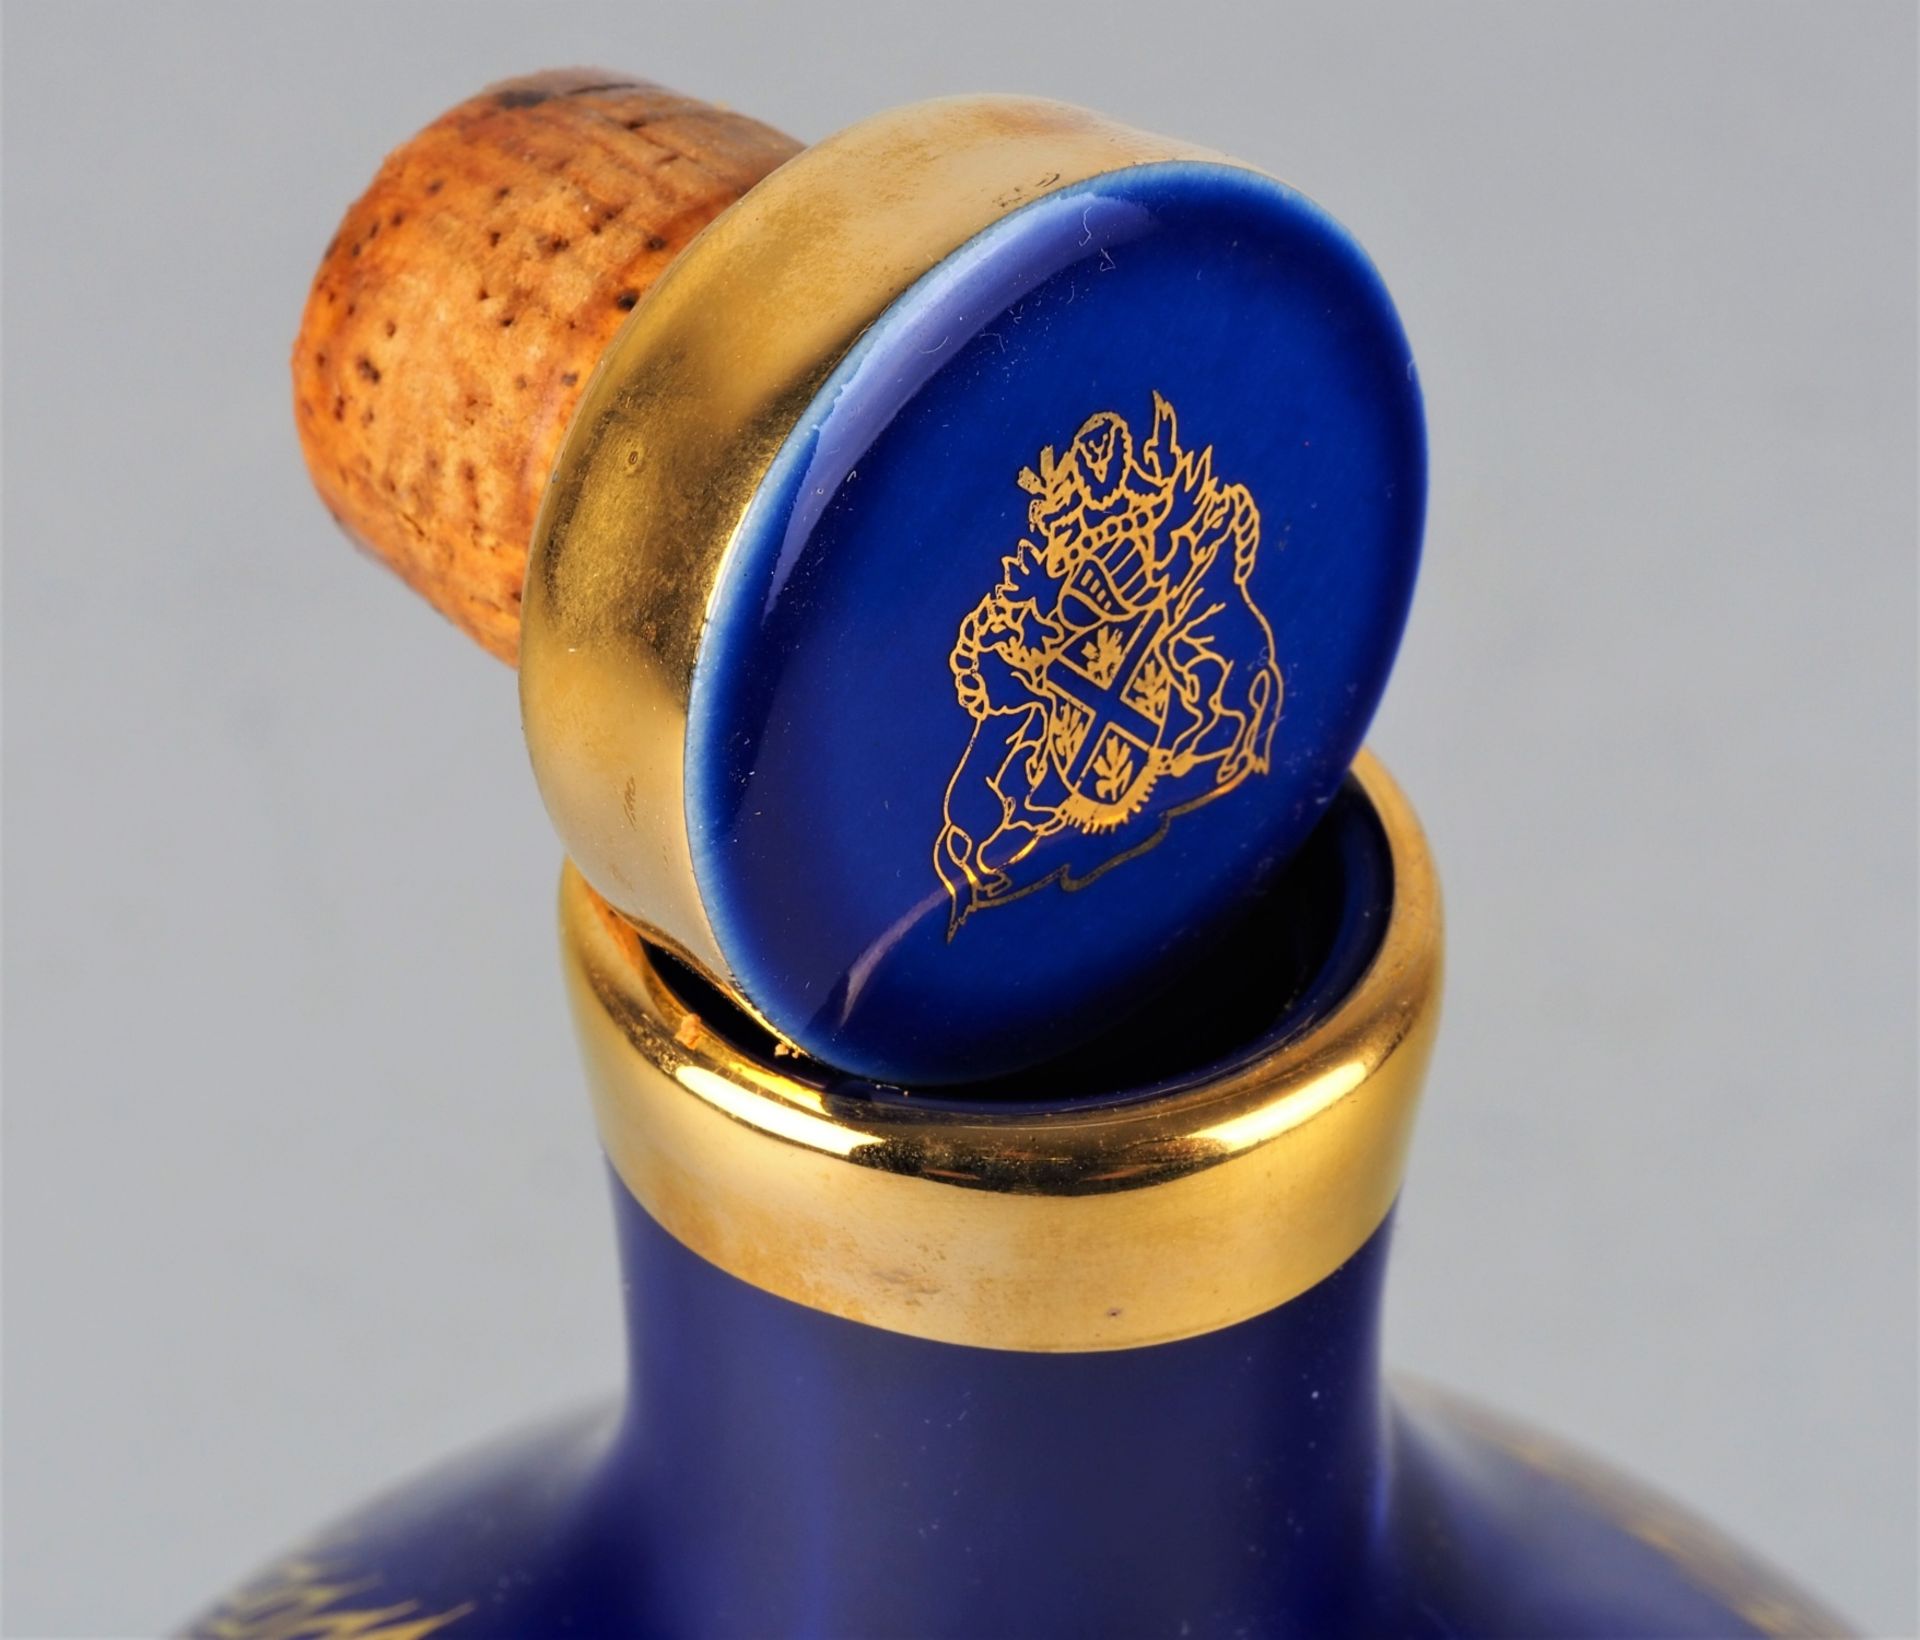 Dimple Blue Decanter Whisky, geöffnet - Bild 2 aus 2